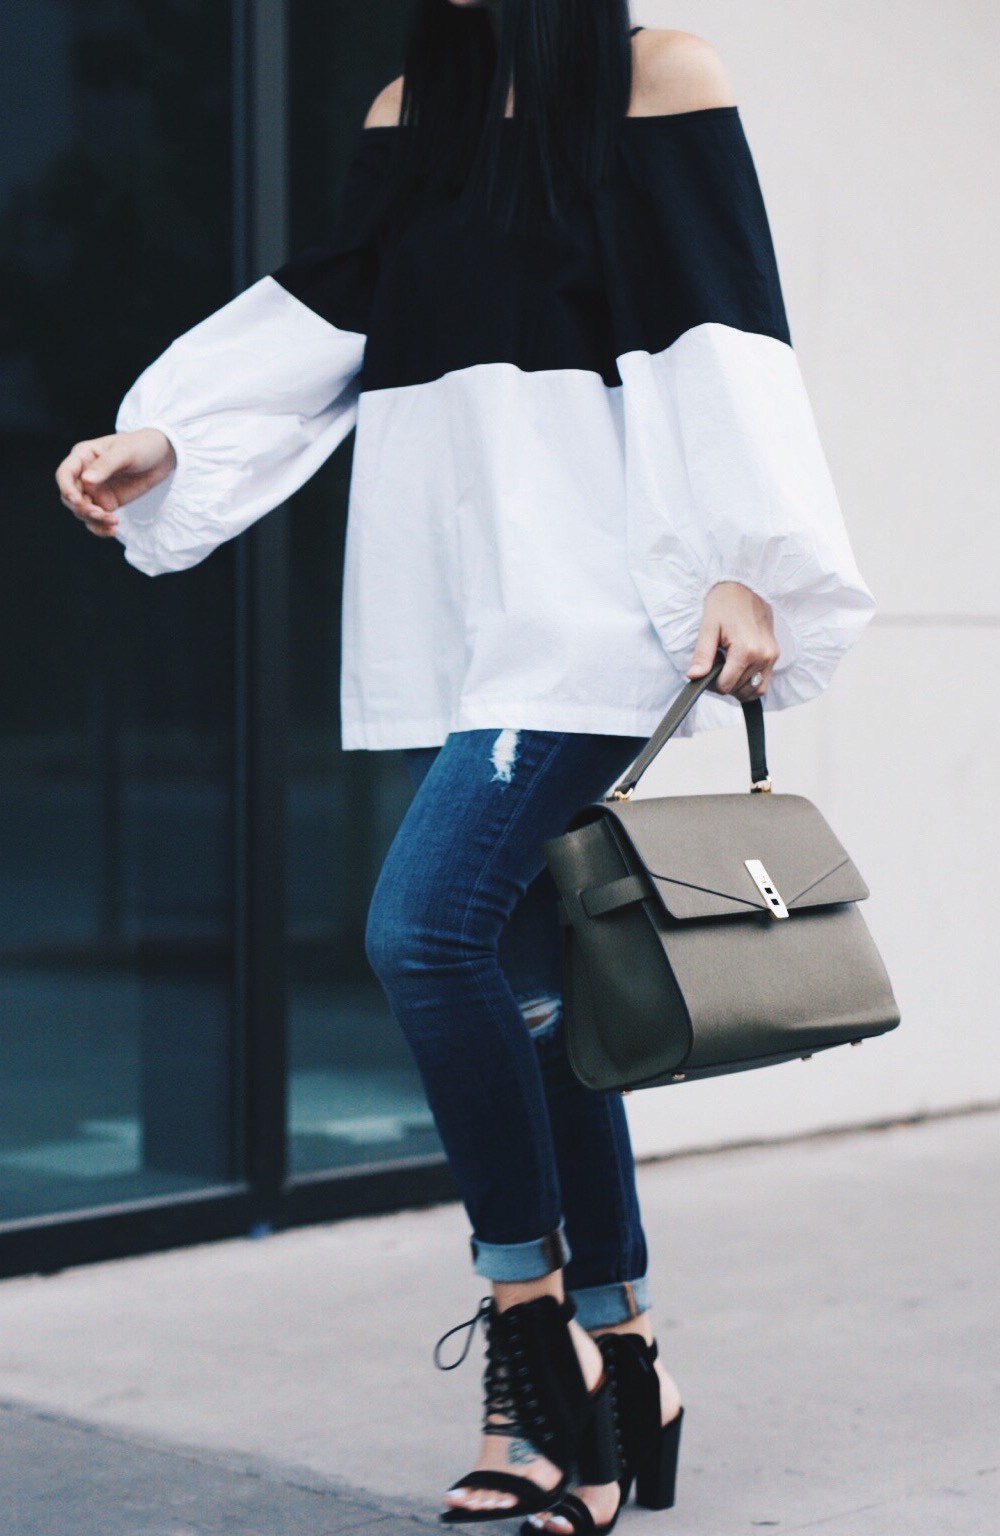 Olive Henri Bendel Bag, Black and White Top, Jeans